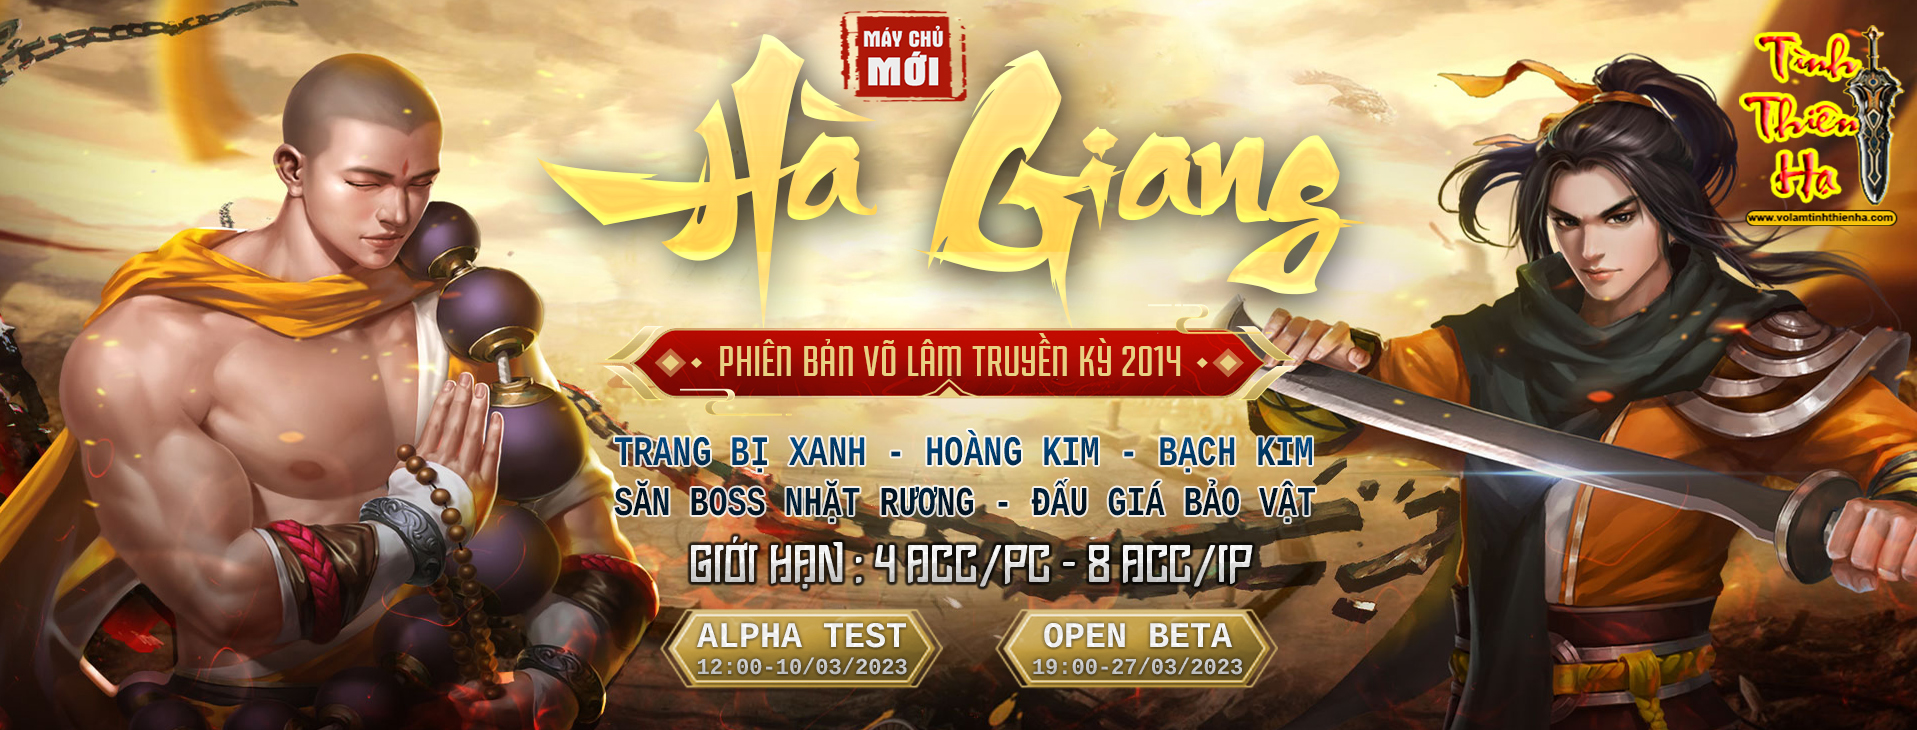 [VoLamTinhThienHa.com] Open Beta - S3 Hà Giang - CTC HKMP - 4 ACC/PC - Tặng Free Trang Bị HKMP Ha-giang-s3